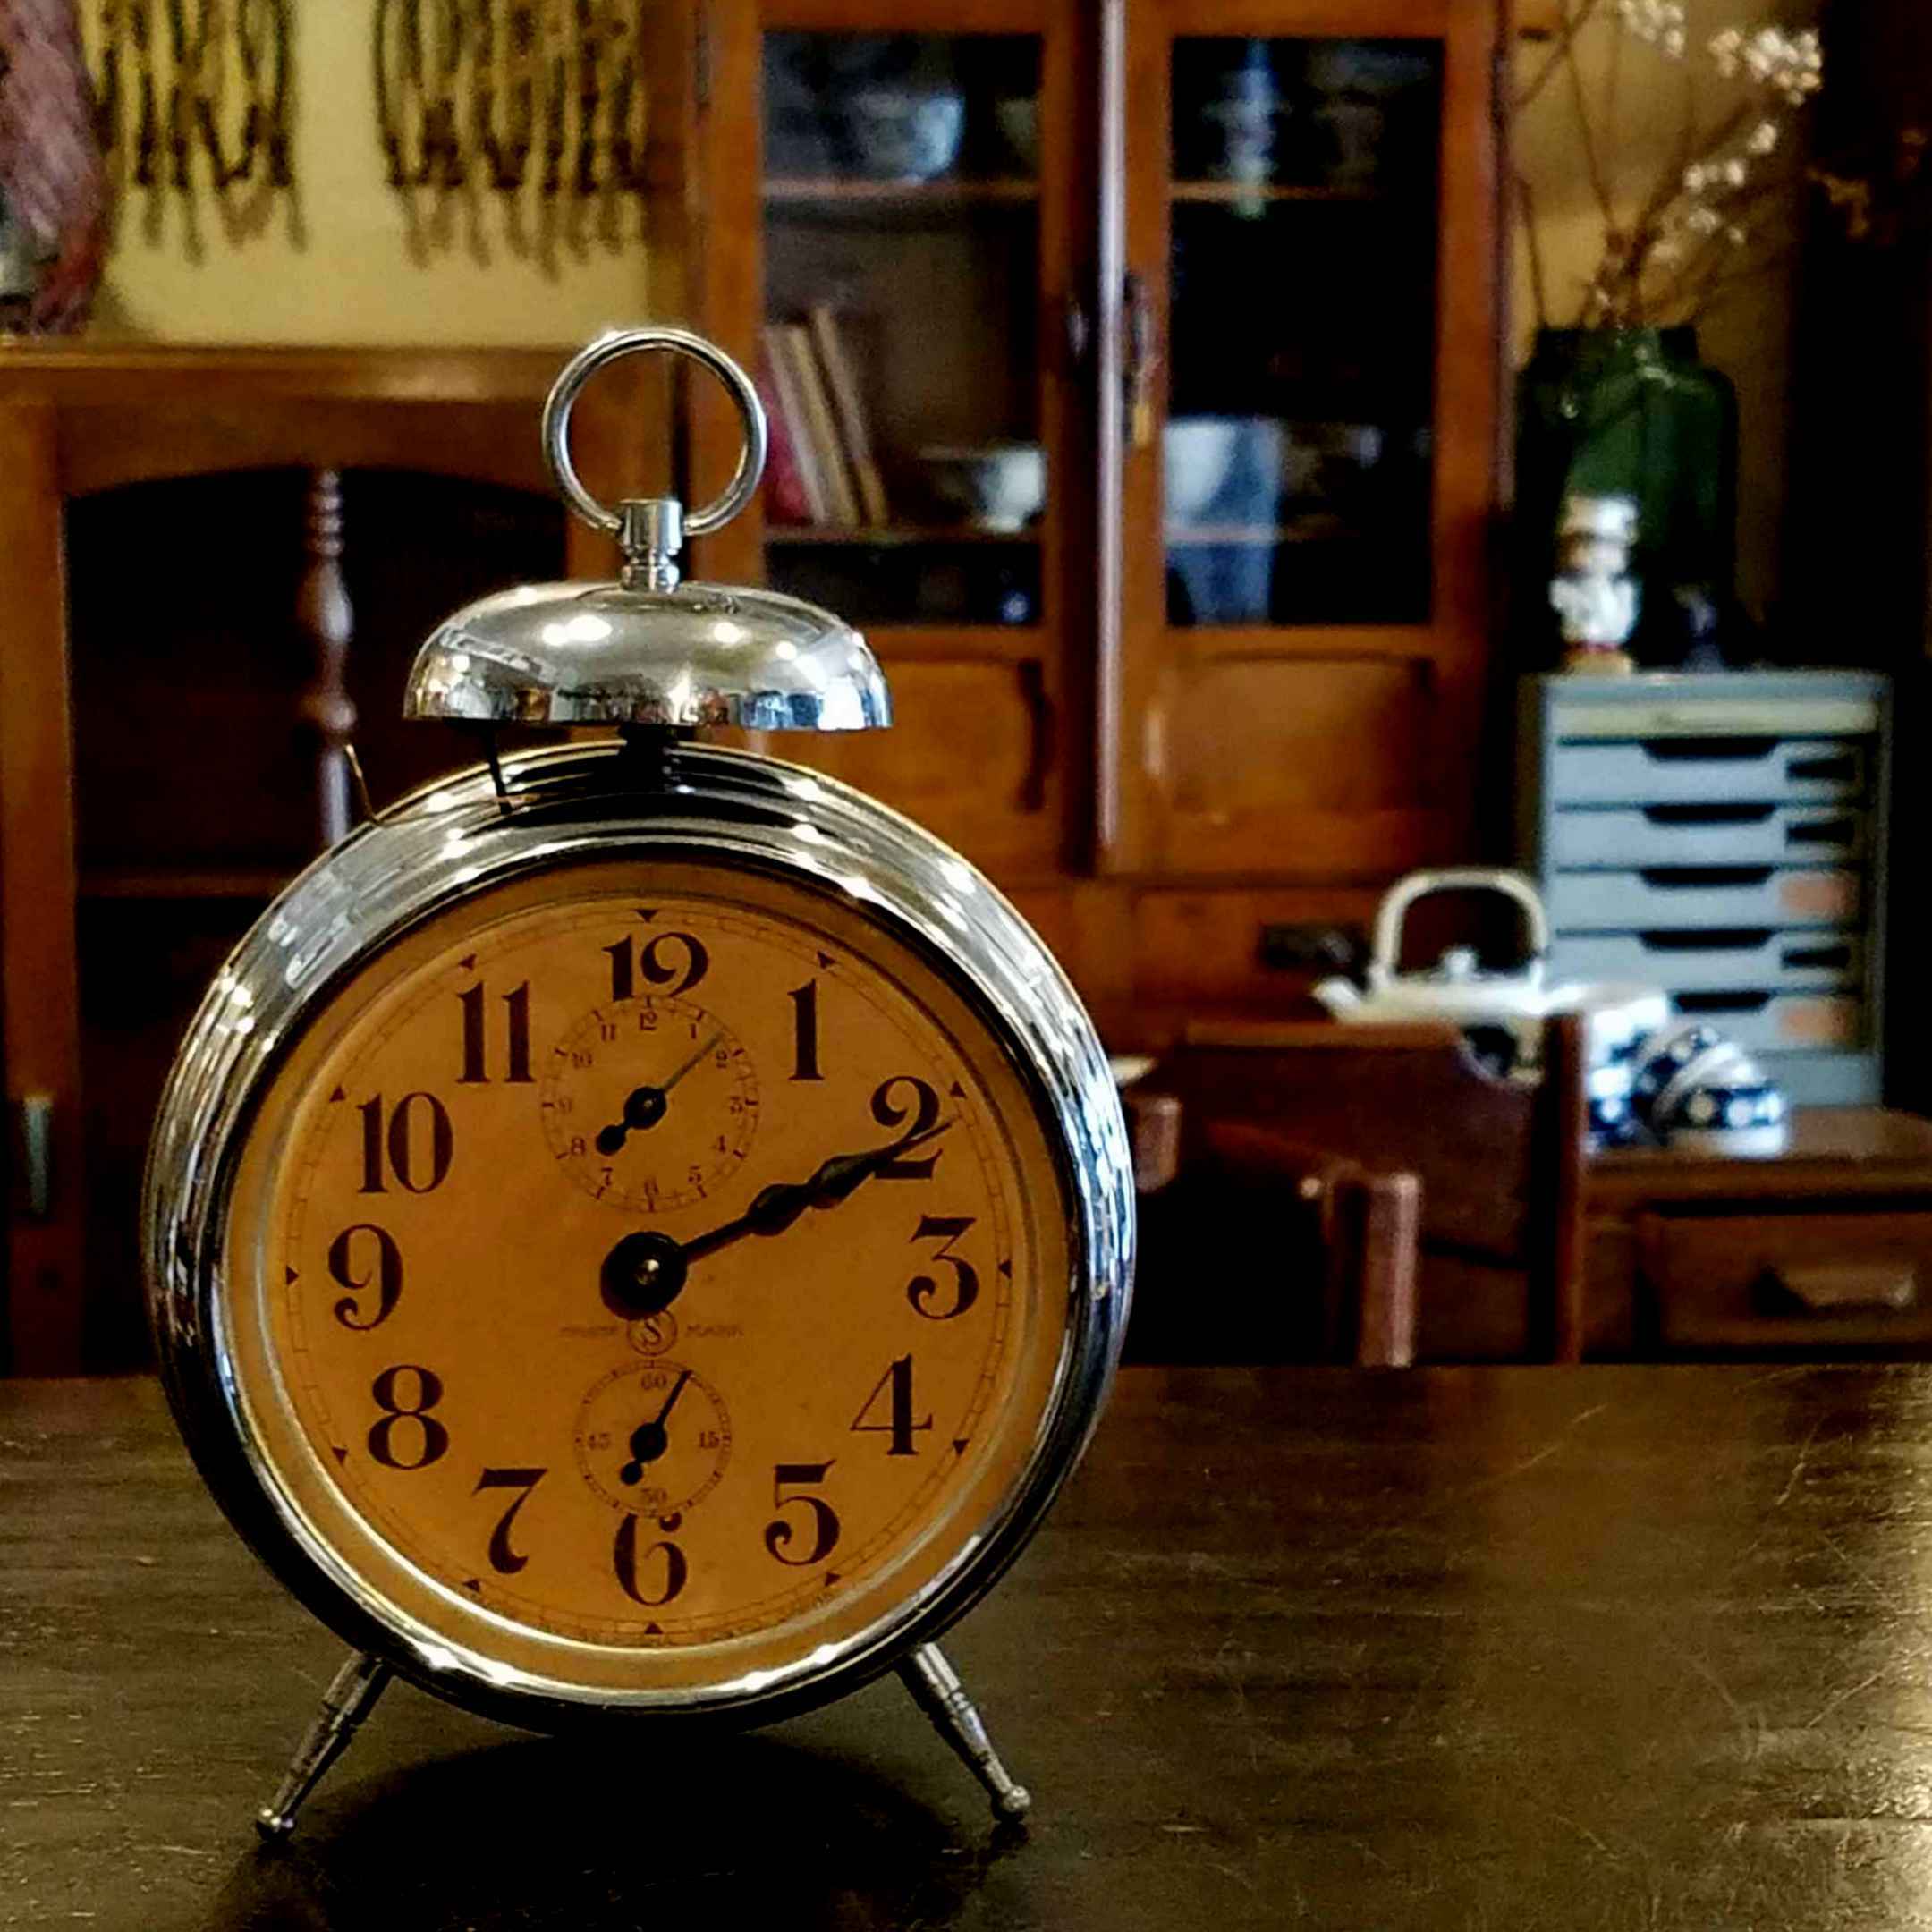 アンティークな精工舎のヘソ型目覚まし時計 - [Sold Out]過去の販売商品